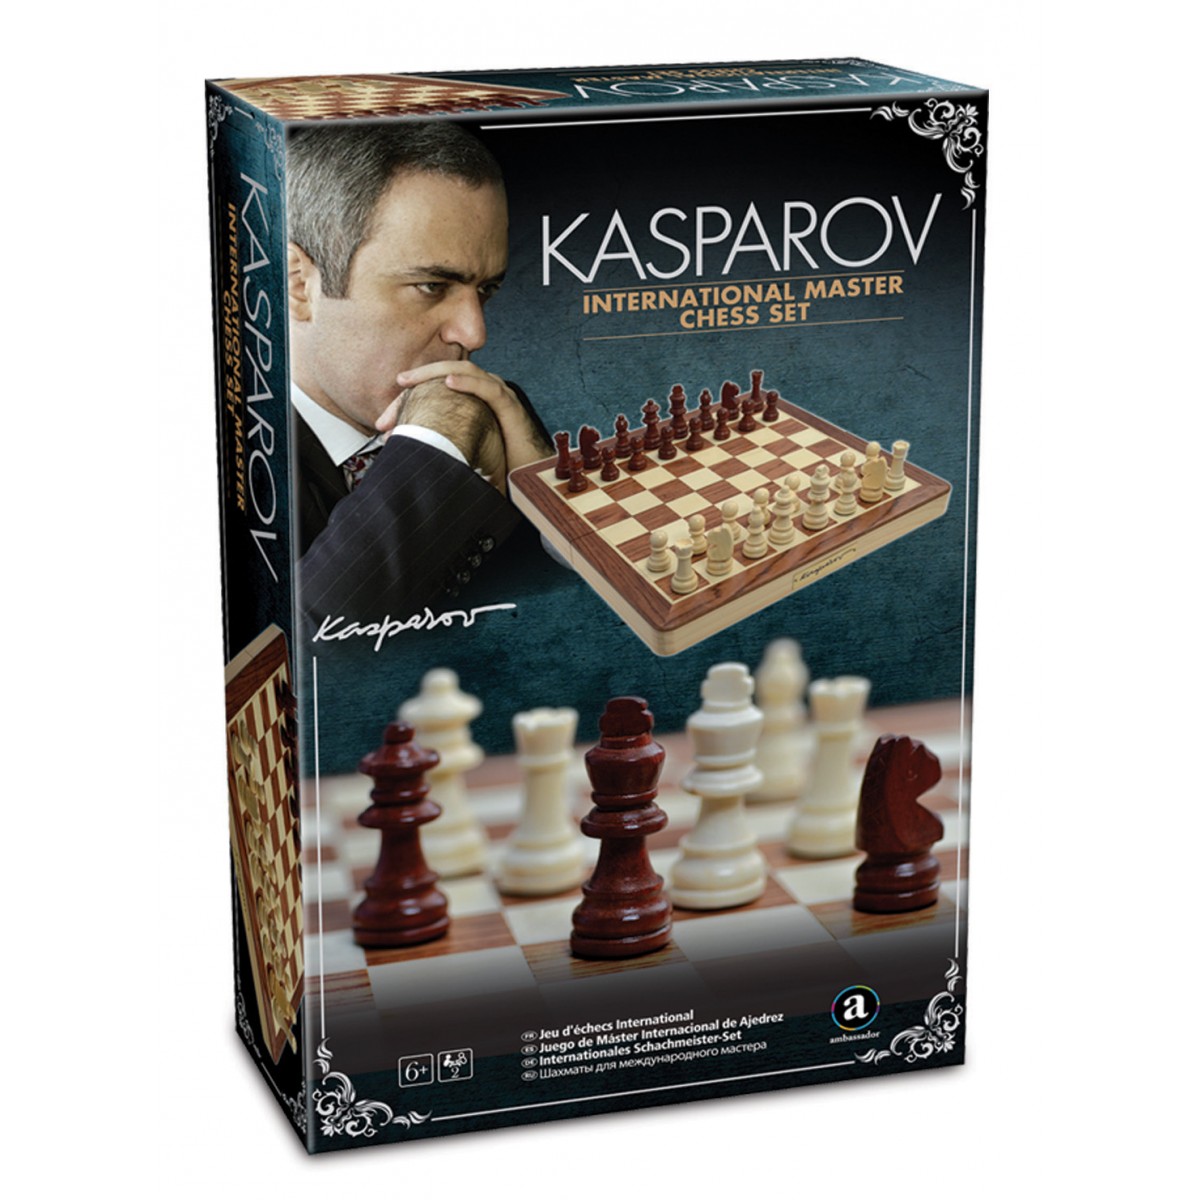 Kasparov X kasparov: 24 jogos comentados do campeo em Promoção na Americanas